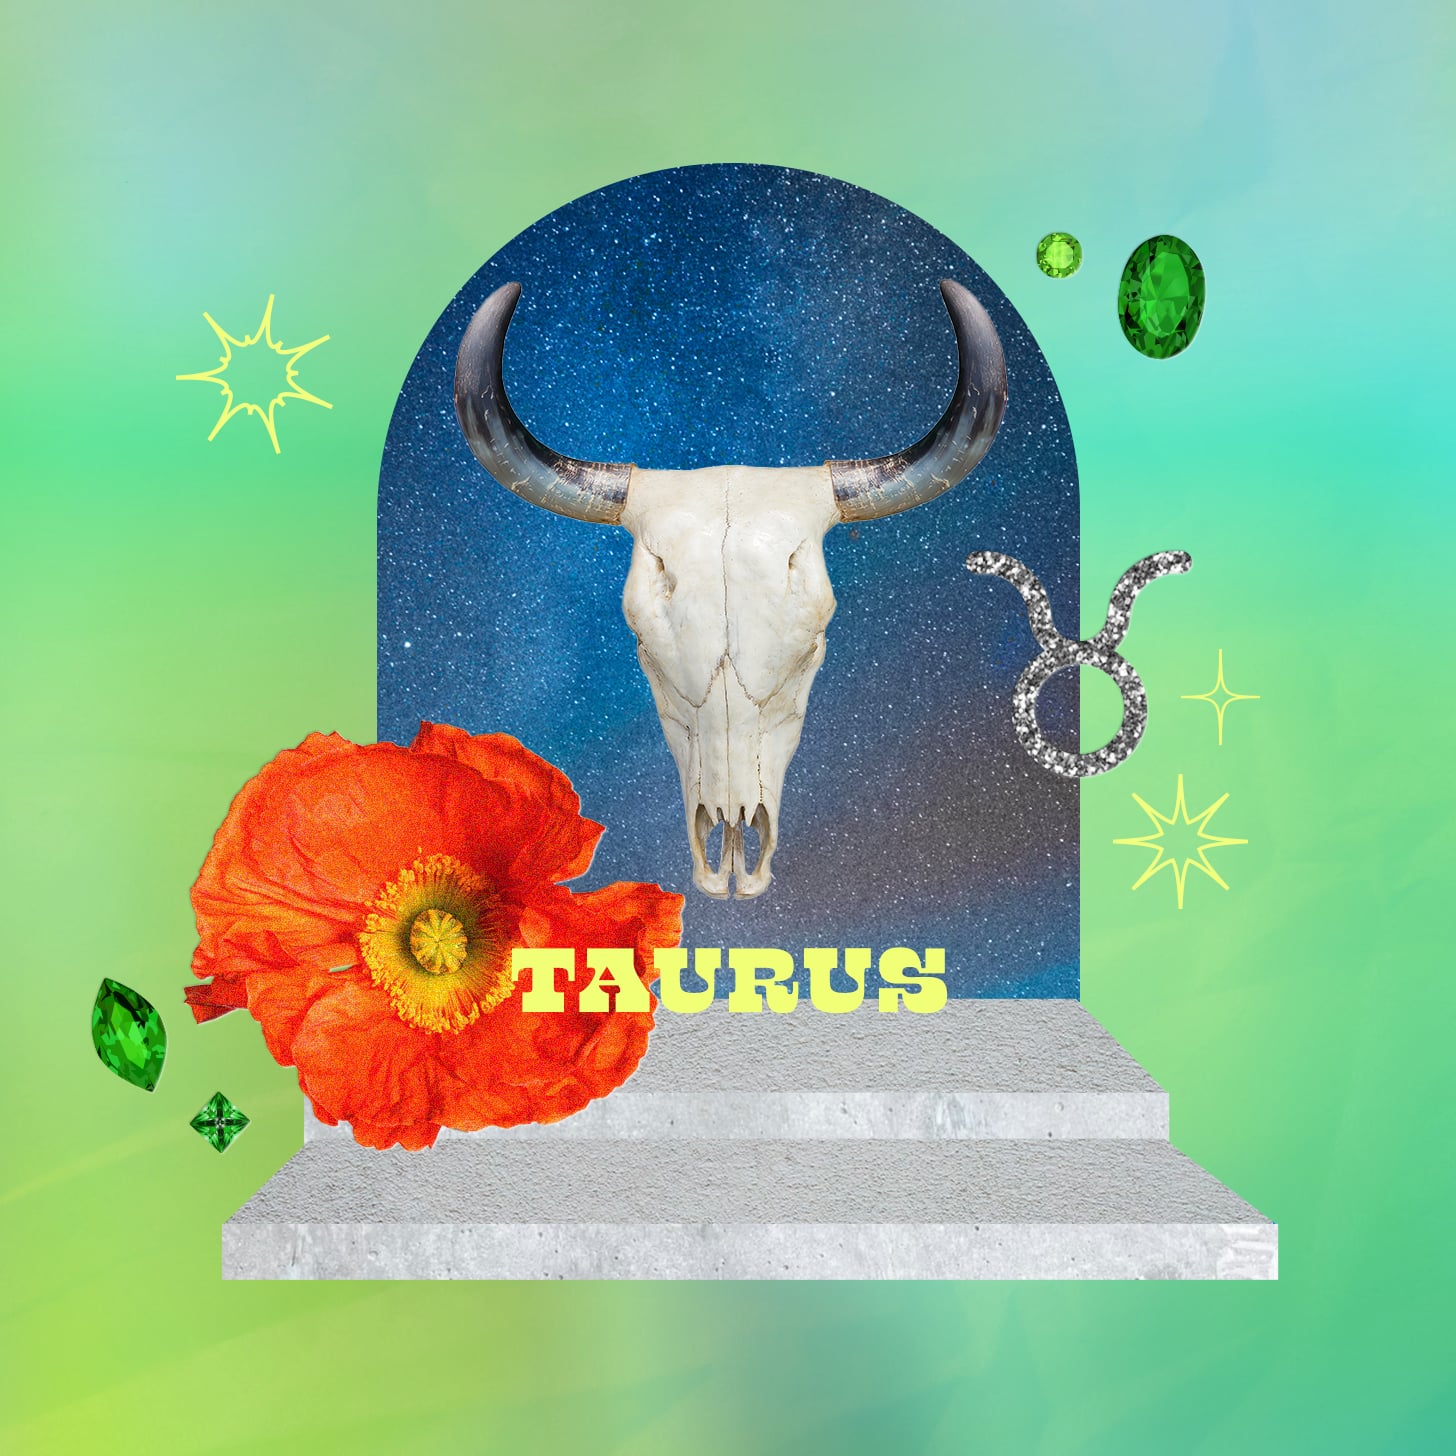 Taurus weekly horoscope for june 26, 2022